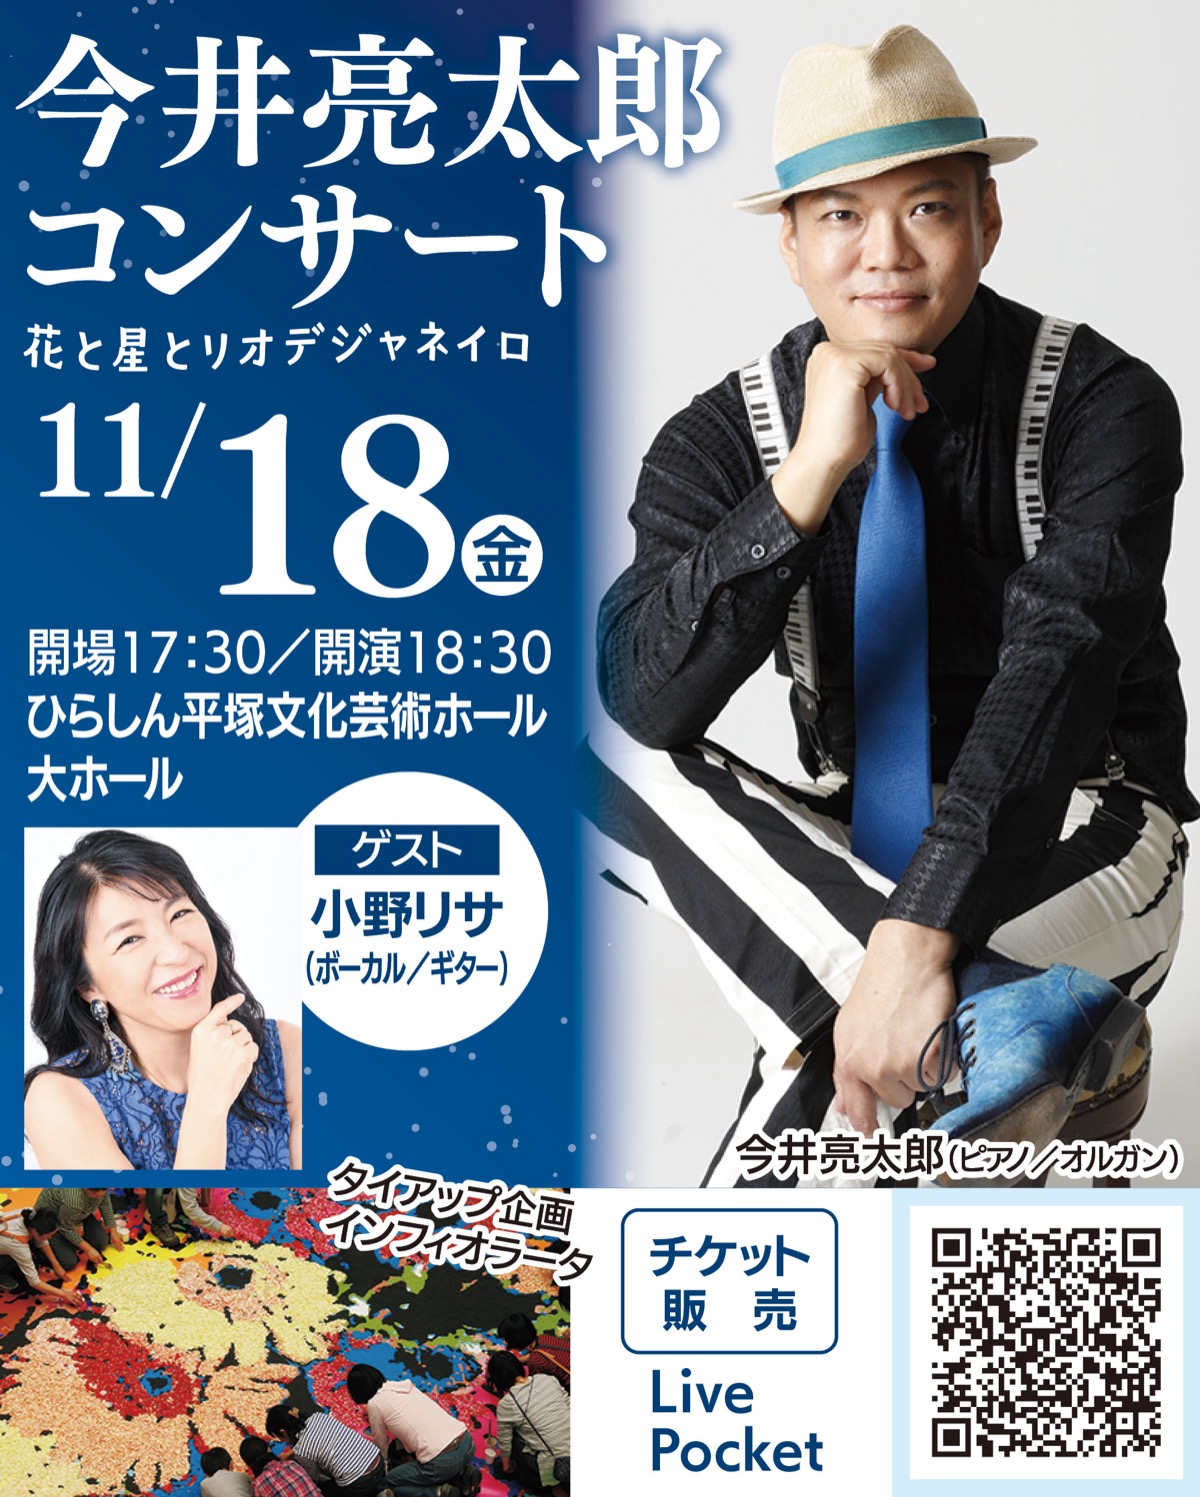 11月18日㈮ 今井亮太郎コンサート チケット好評発売中 | 平塚 | タウンニュース